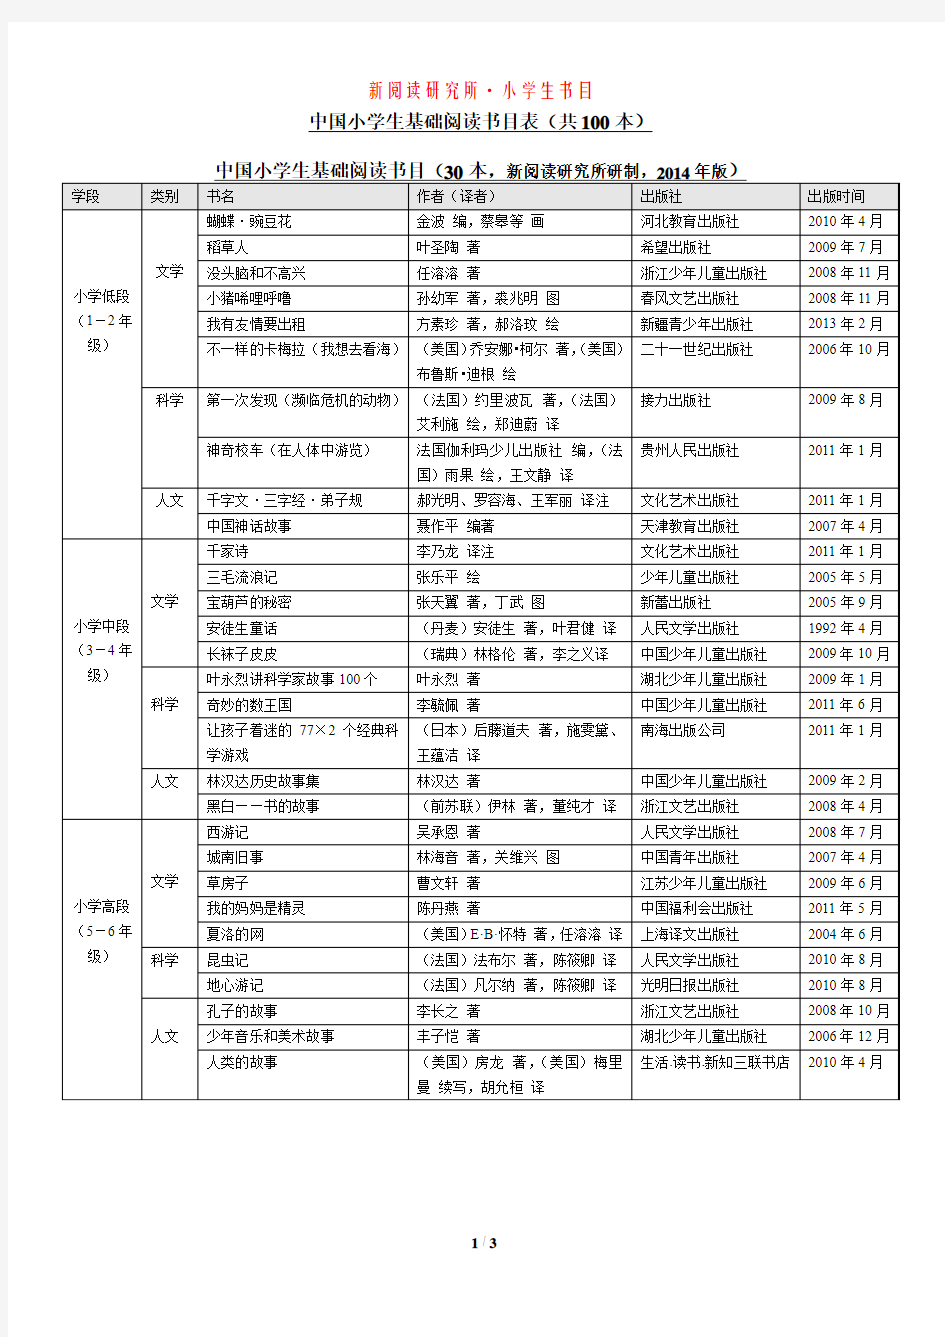 《中国小学生基础阅读书目表》_修订版(2014年)